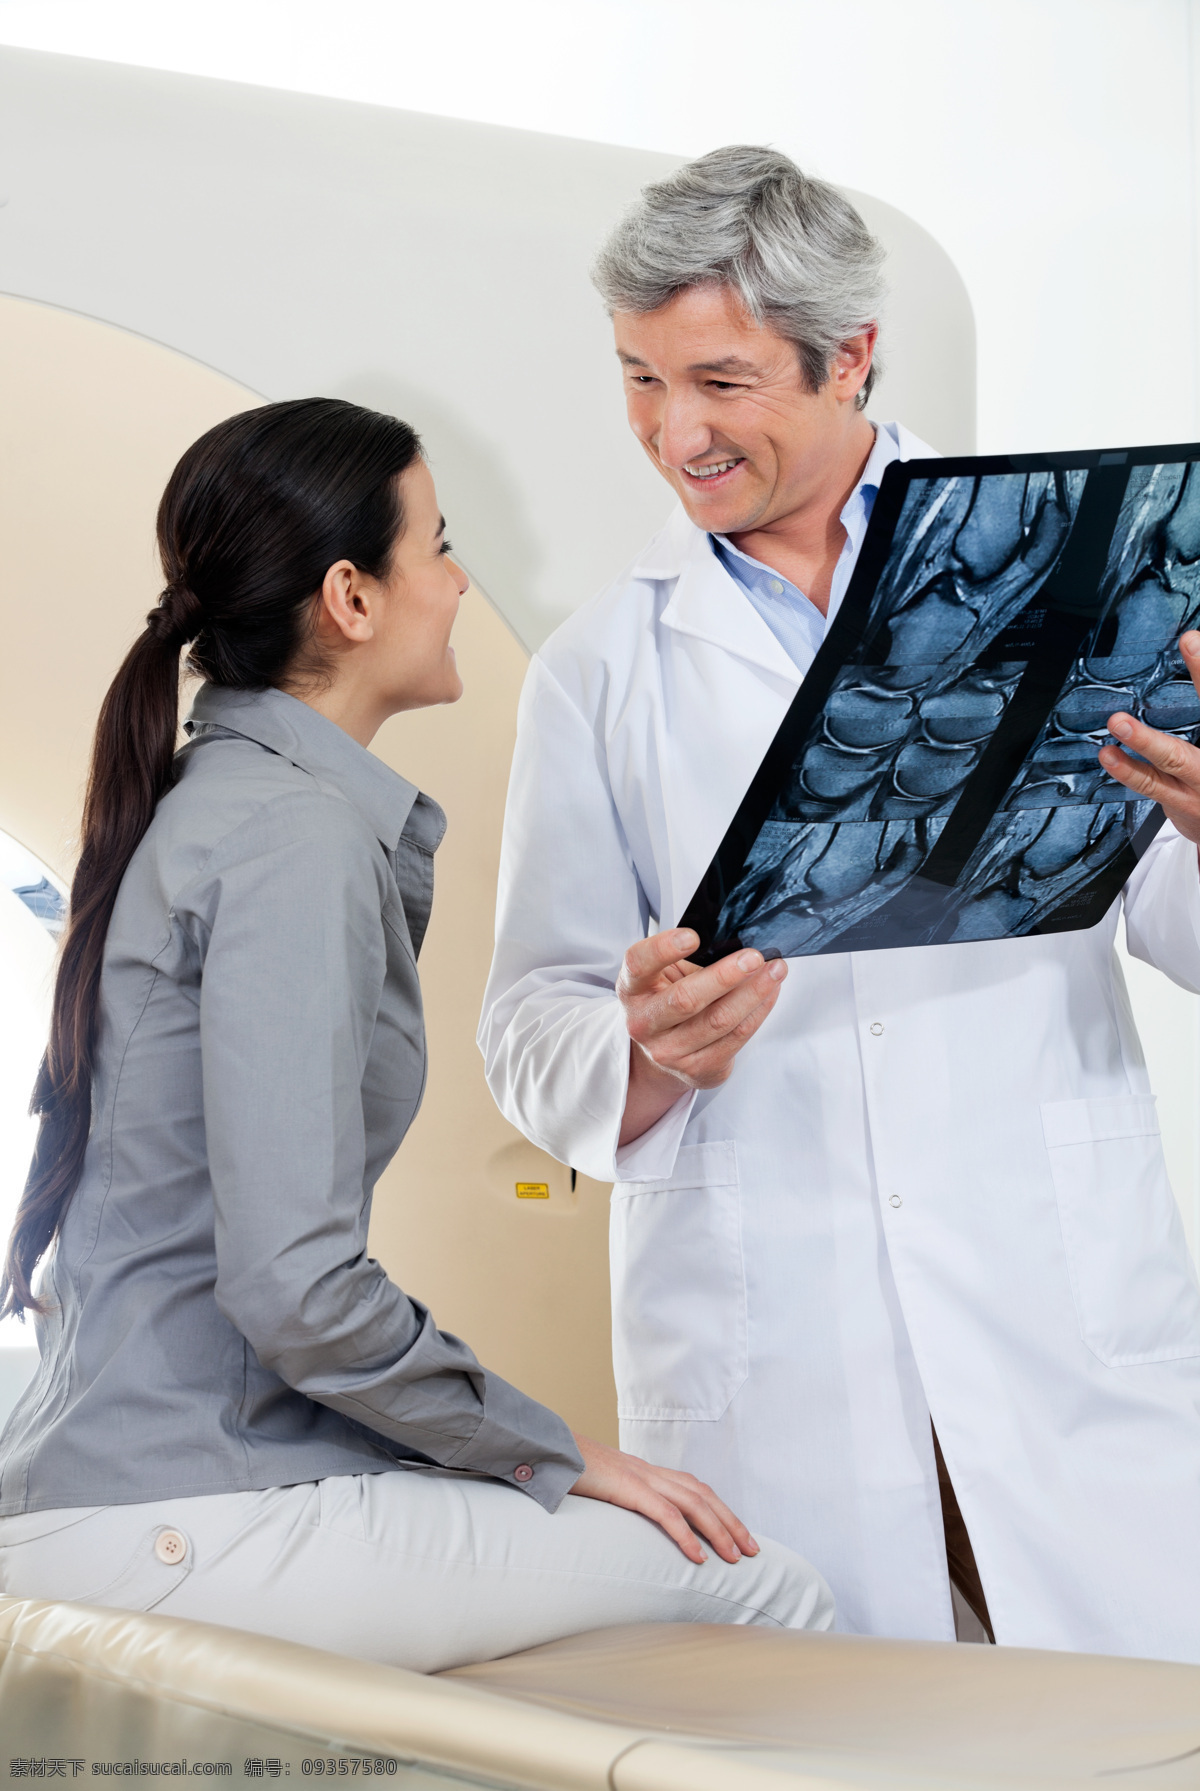 女 病人 看 x 光 片 医生 x光片 医疗护理 天使 医务人员 职业人物 现代科技